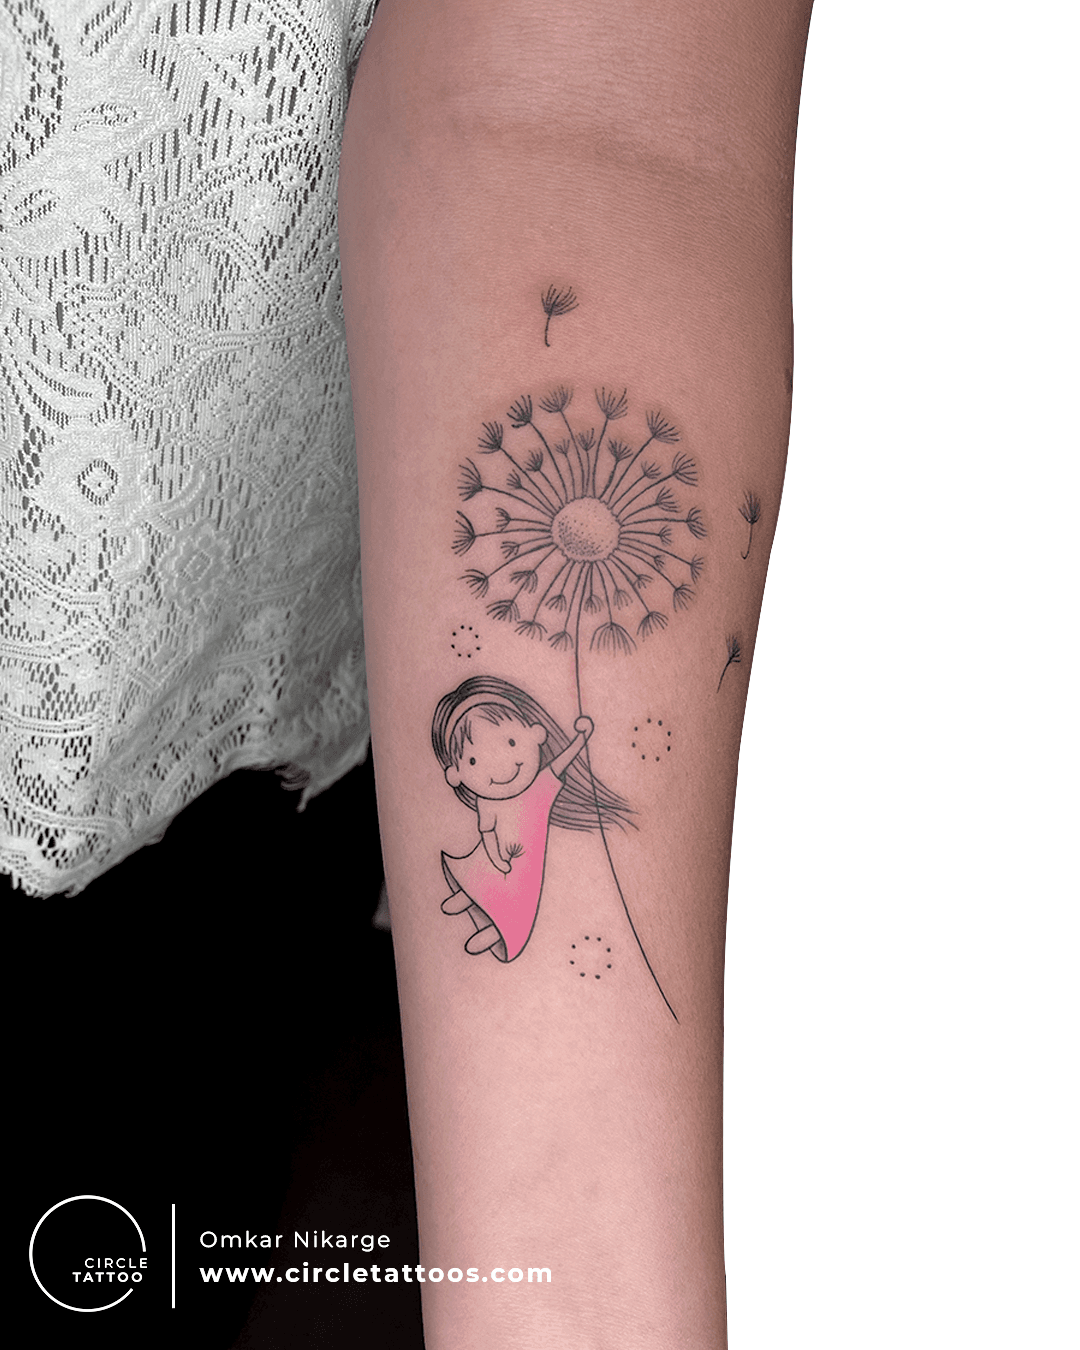 Dandelions tattoo - Tattoogrid.net